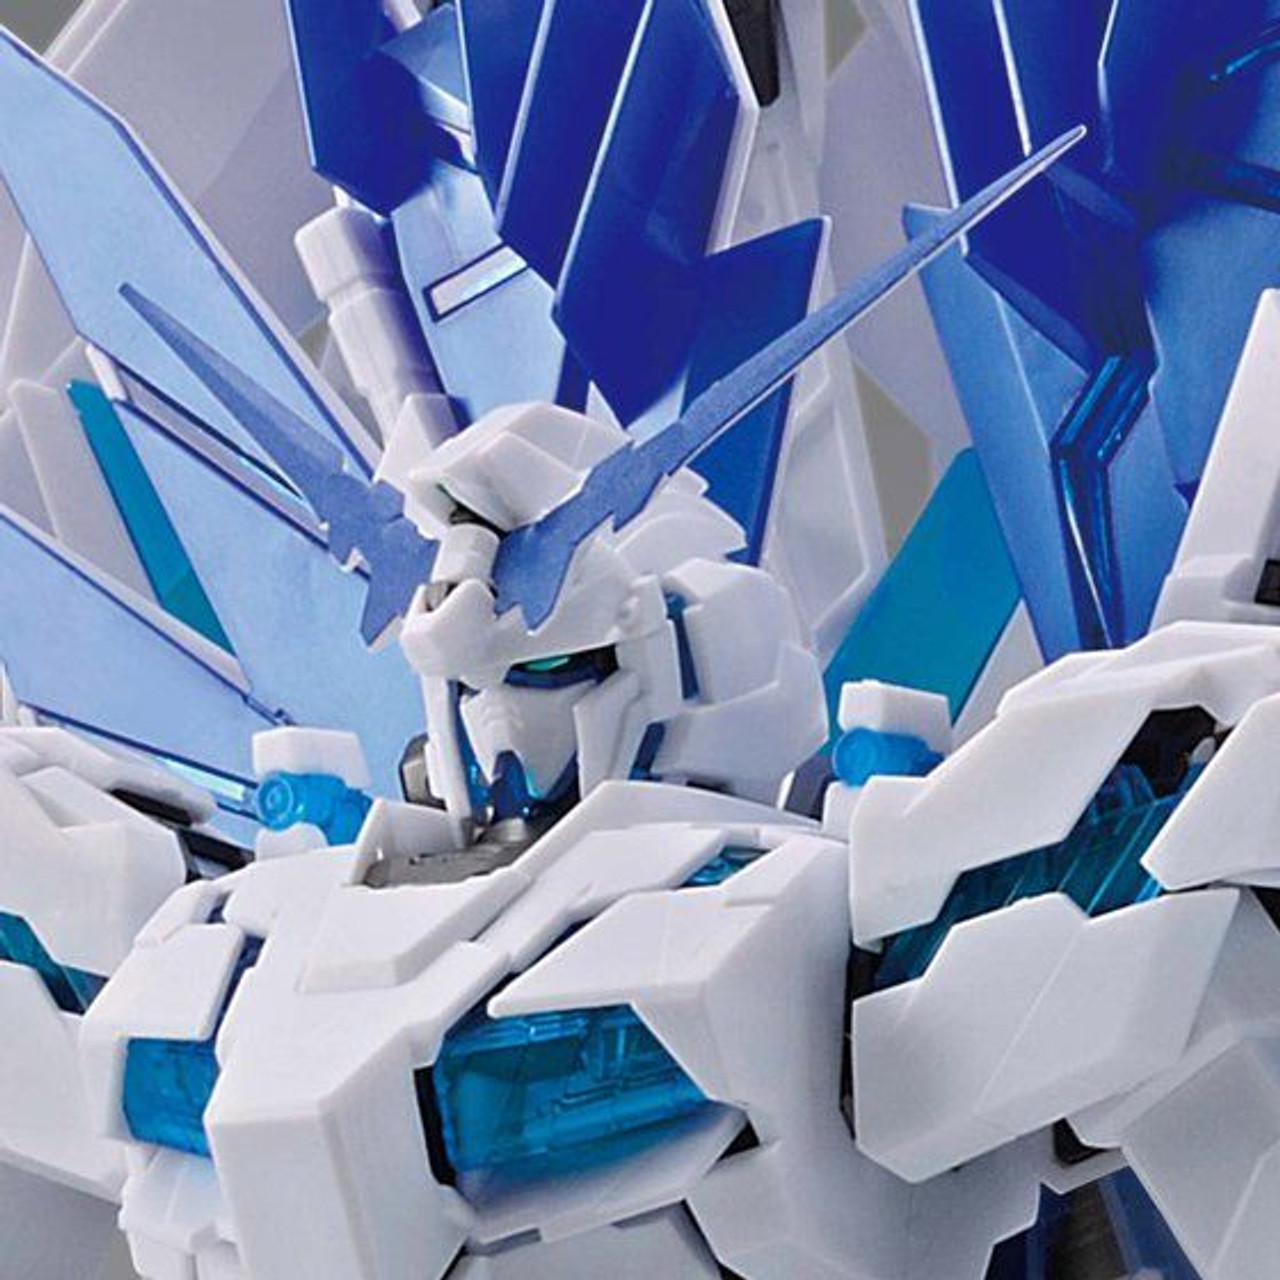 Bandai Gundam Base Limited RG 1/144 Unicorn Gundam Perfectibility Model Kit for sale online 